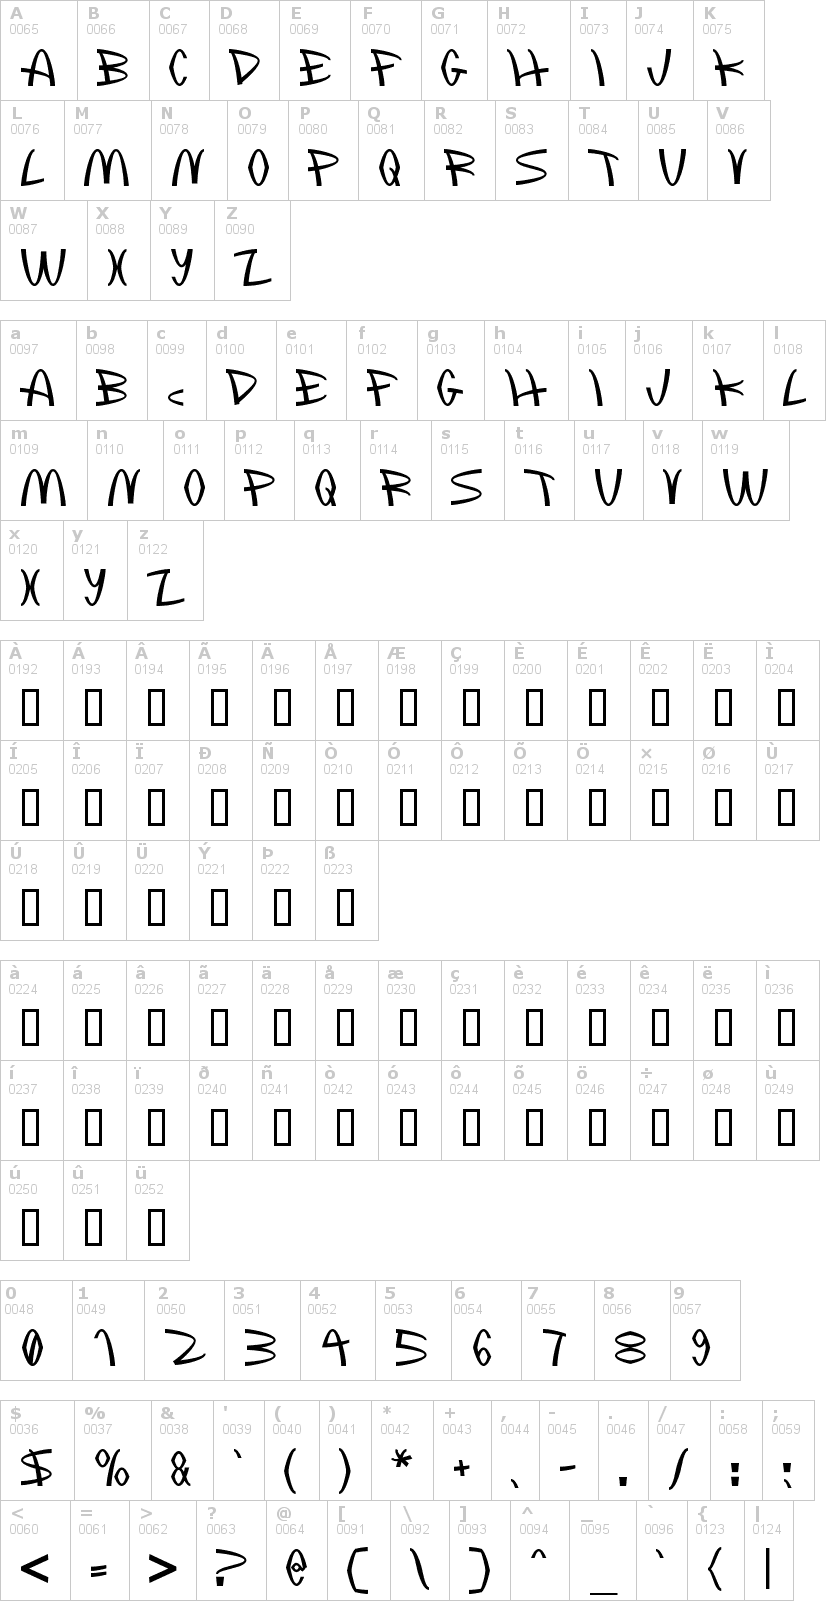 Lettere dell'alfabeto del font mclawsuit con le quali è possibile realizzare adesivi prespaziati